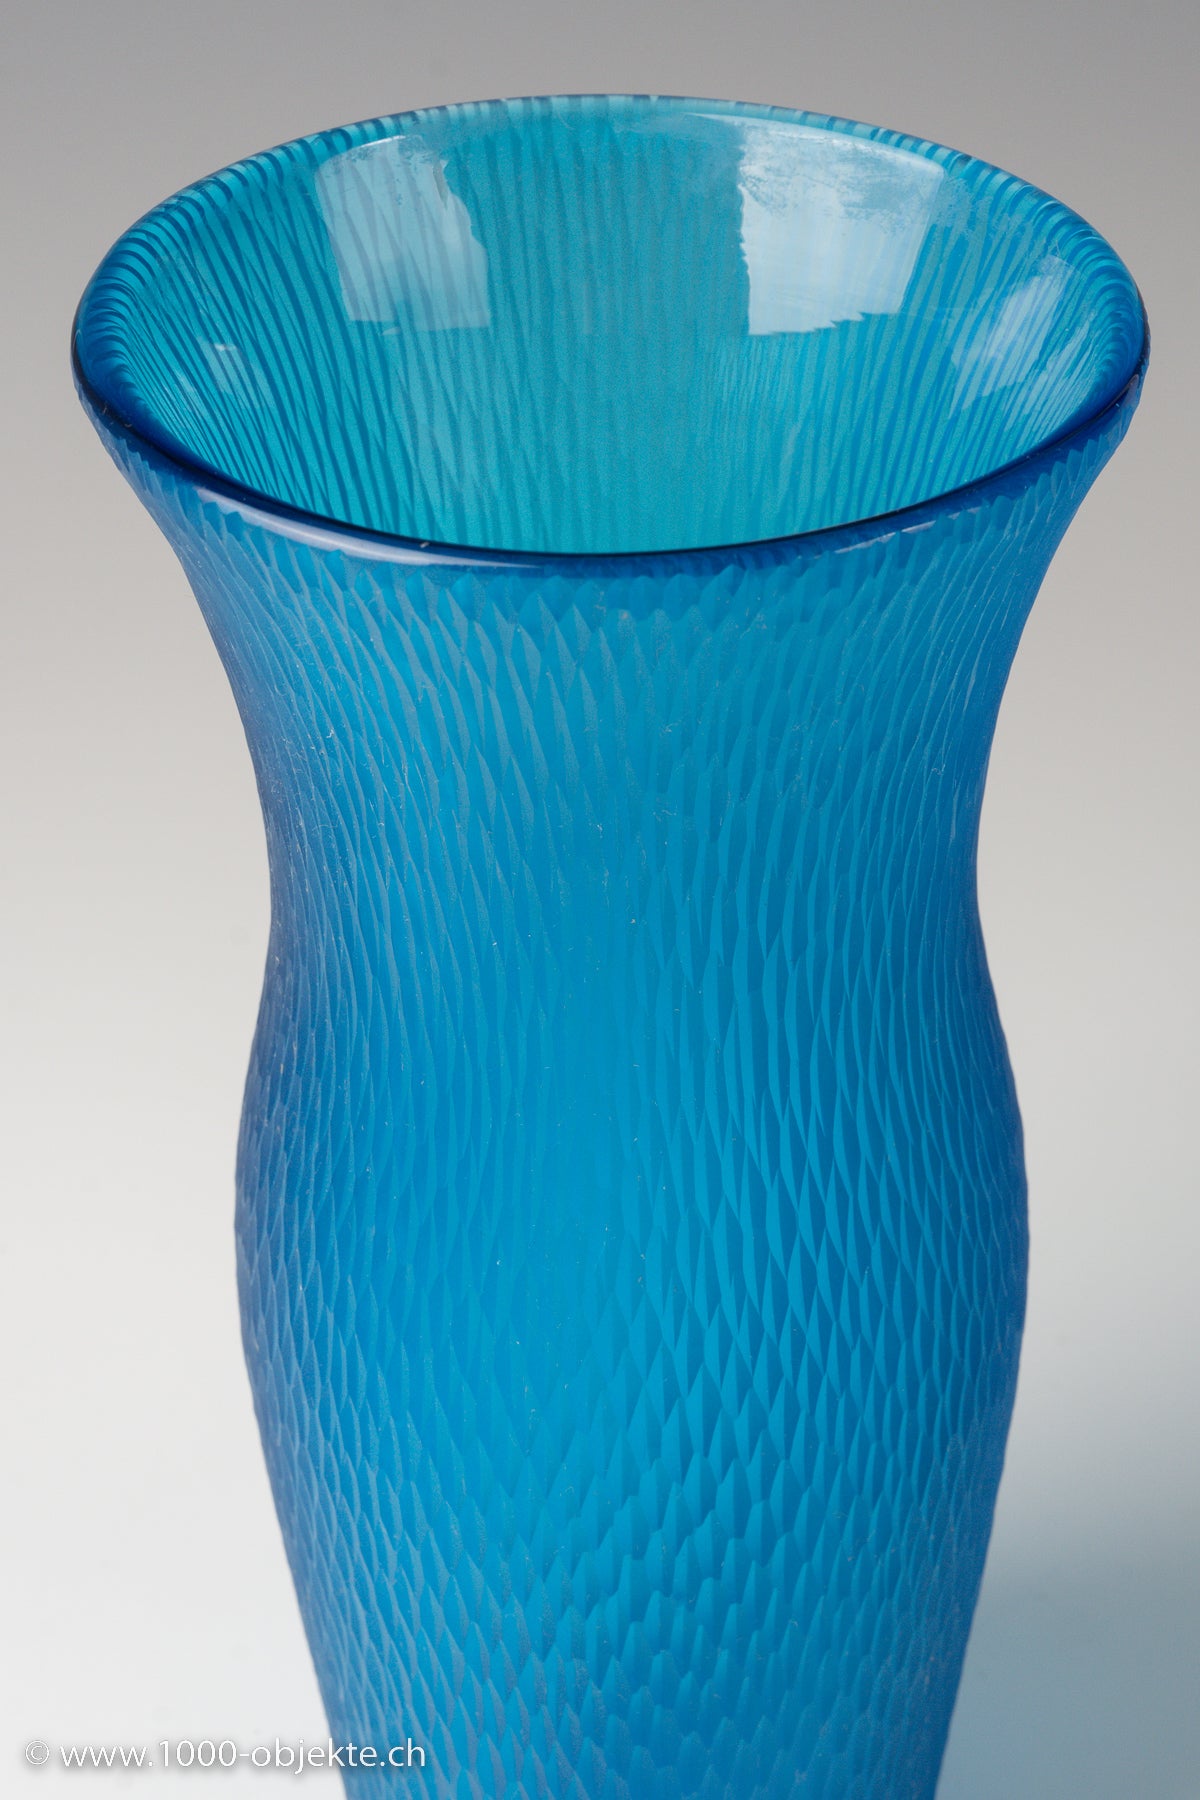 Carlo Scarpa für Venini. Einzigartige Battuto-Vase, Modell 3951, signiert 